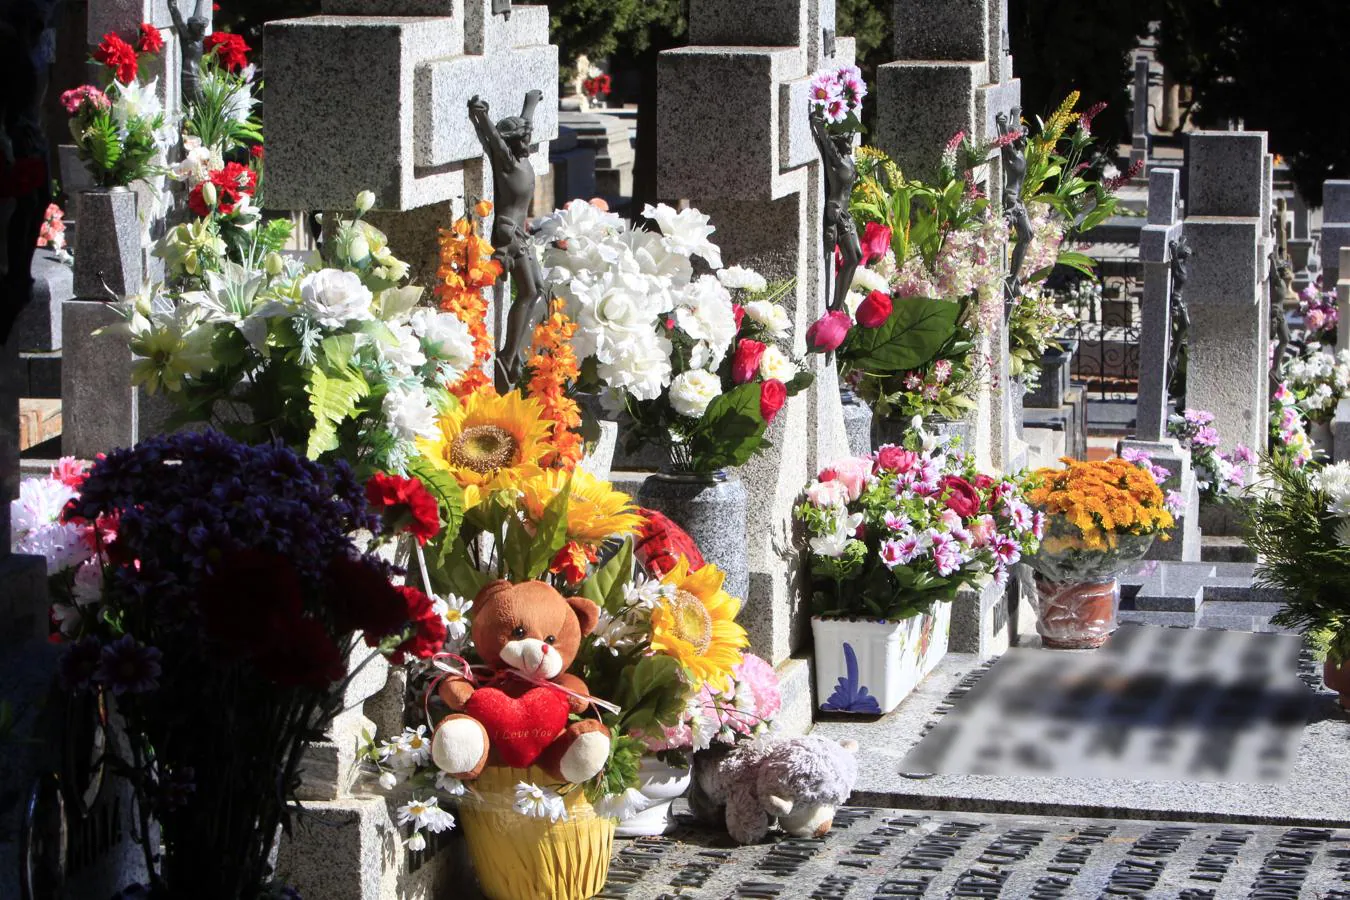 Miles de toledanos visitan el cementerio el Día de todos los Santos